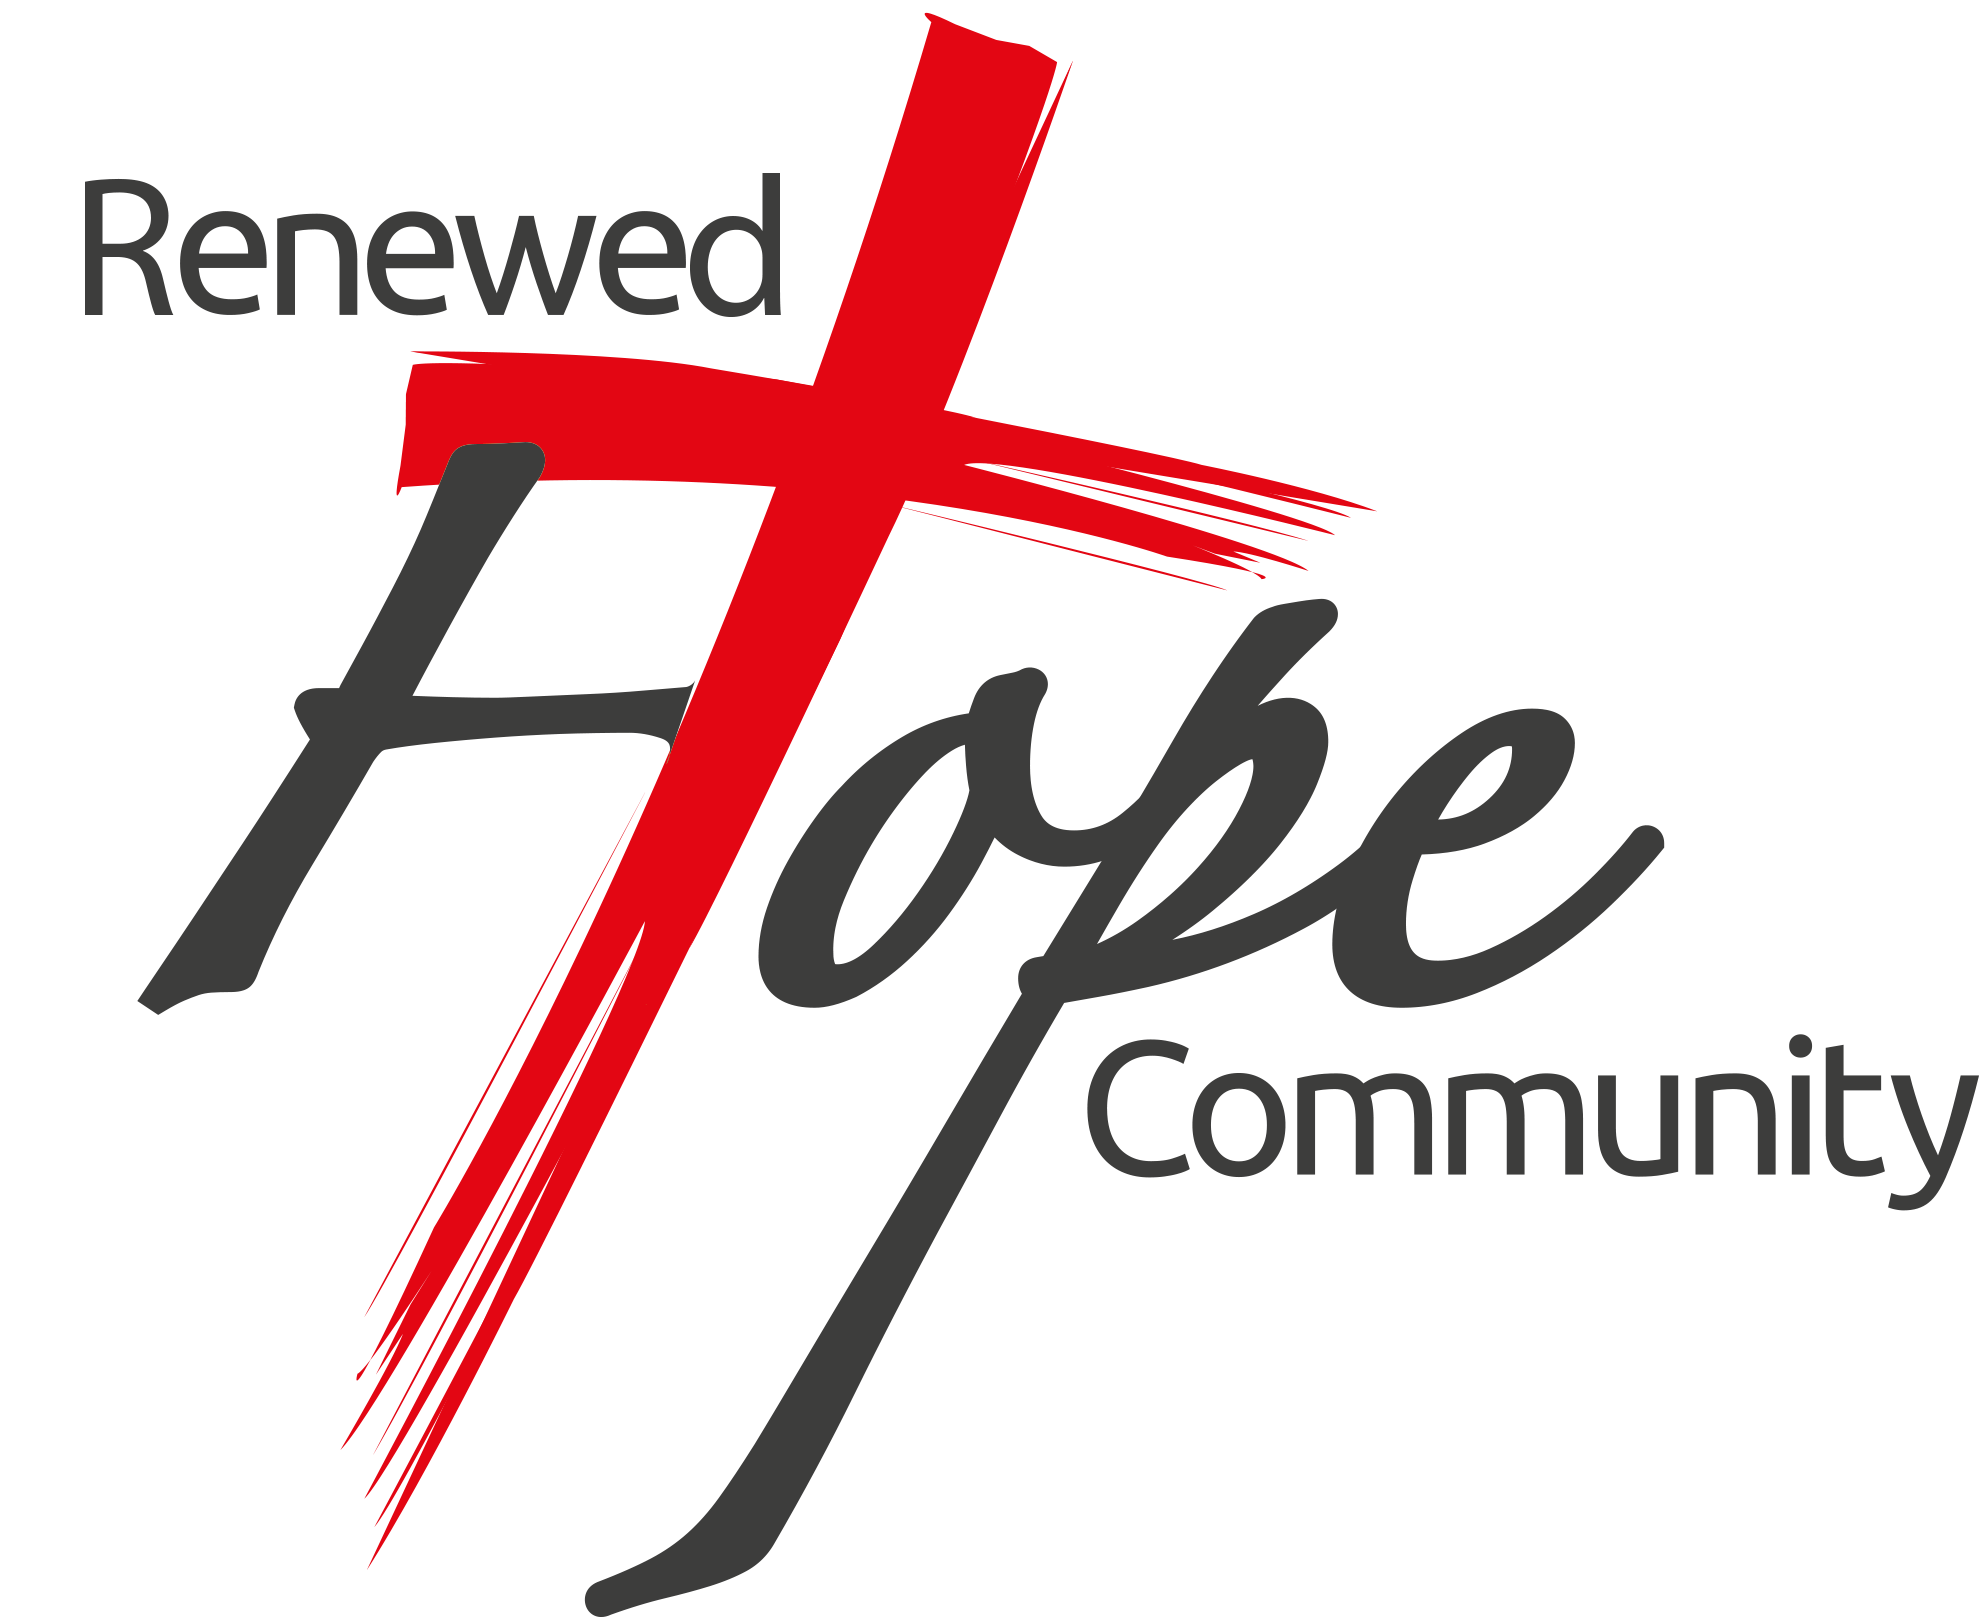 Renewed Hope Community — Church in Kamothe, Church in Khandeshwar, Church in Khanda Colony, Church in Panvel, Church in New Panvel,Church in Karanjade